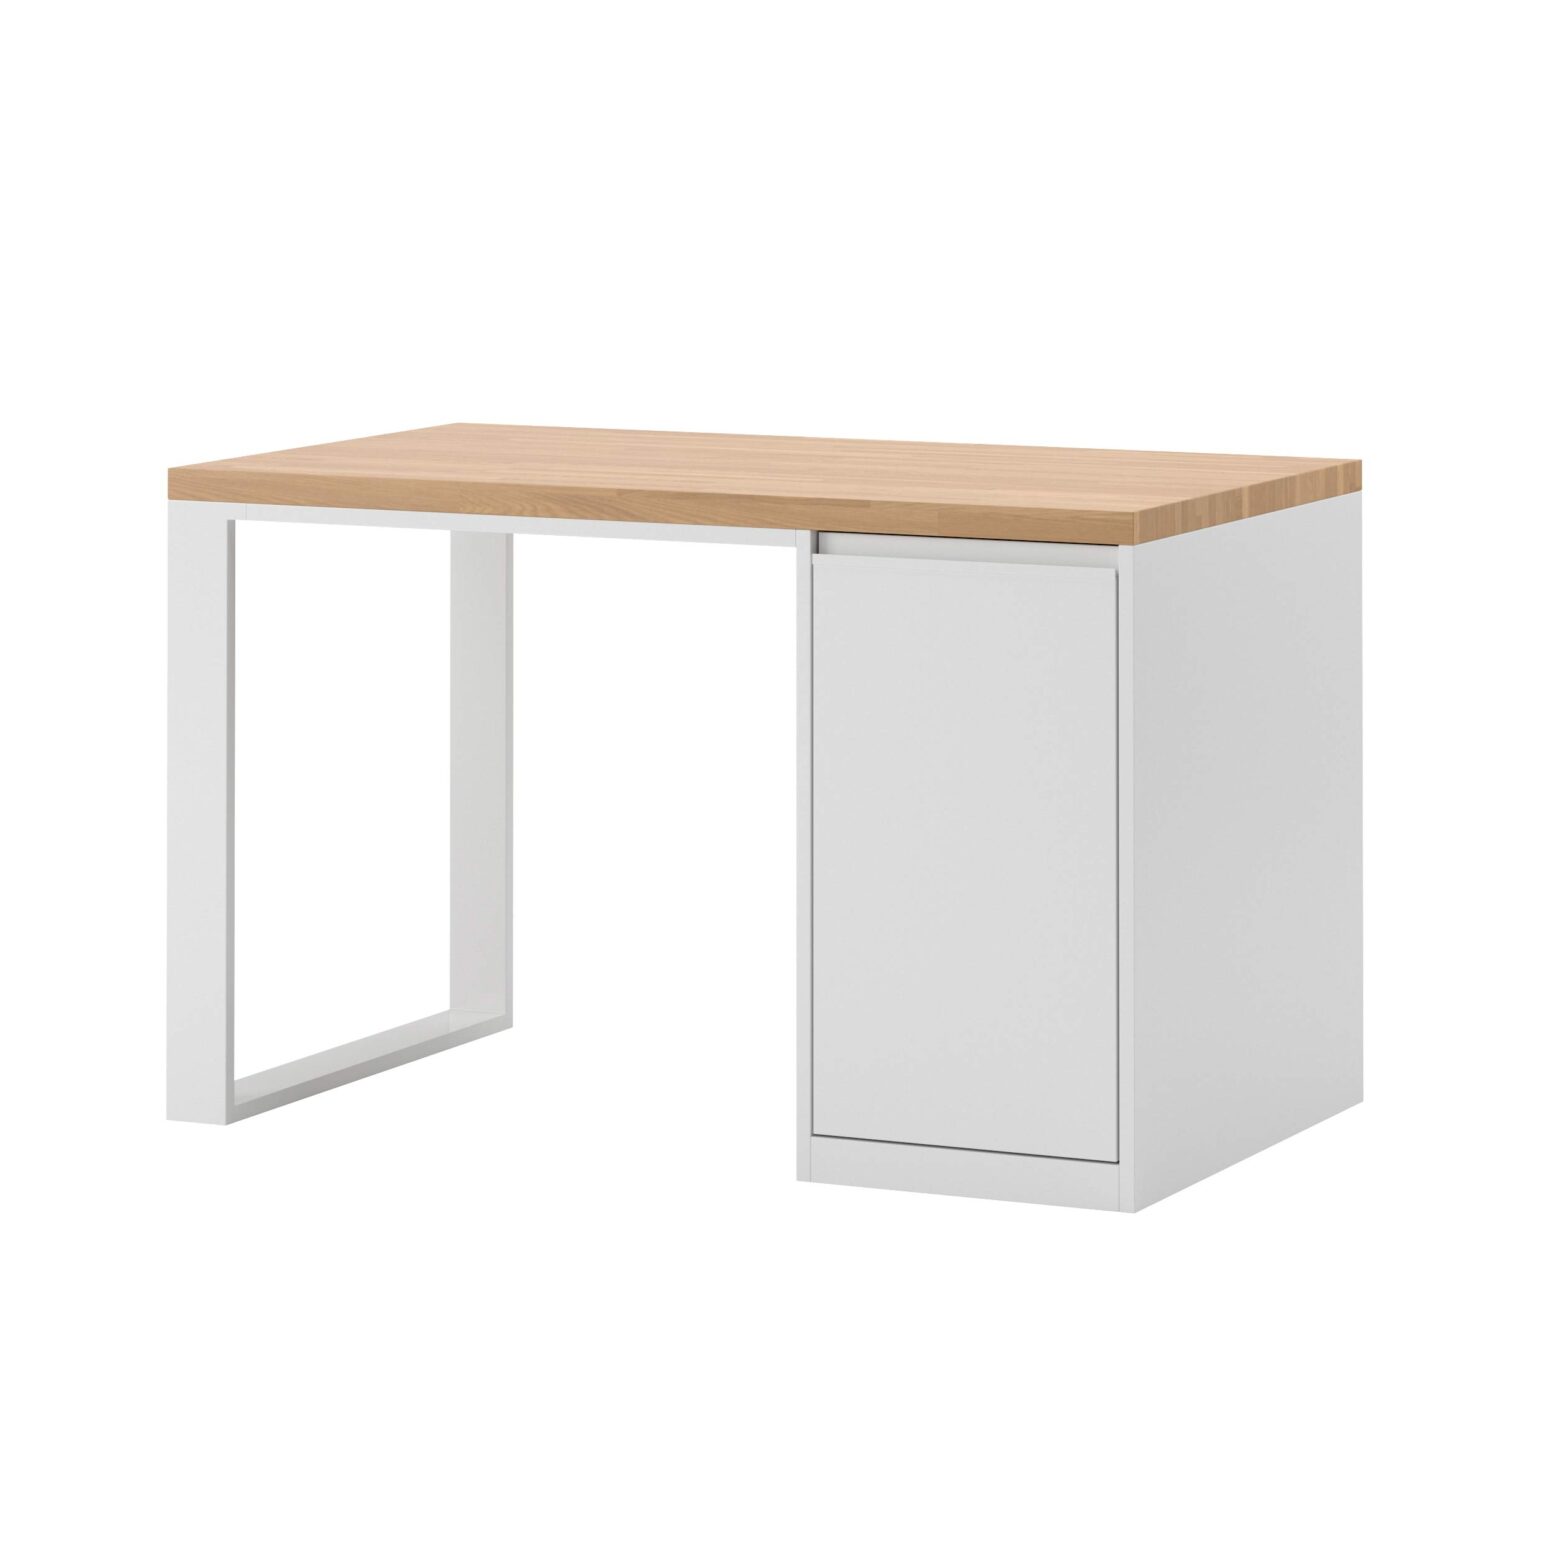 białe biurko z kontenerkiem wbudowanym i drewnianym blatem